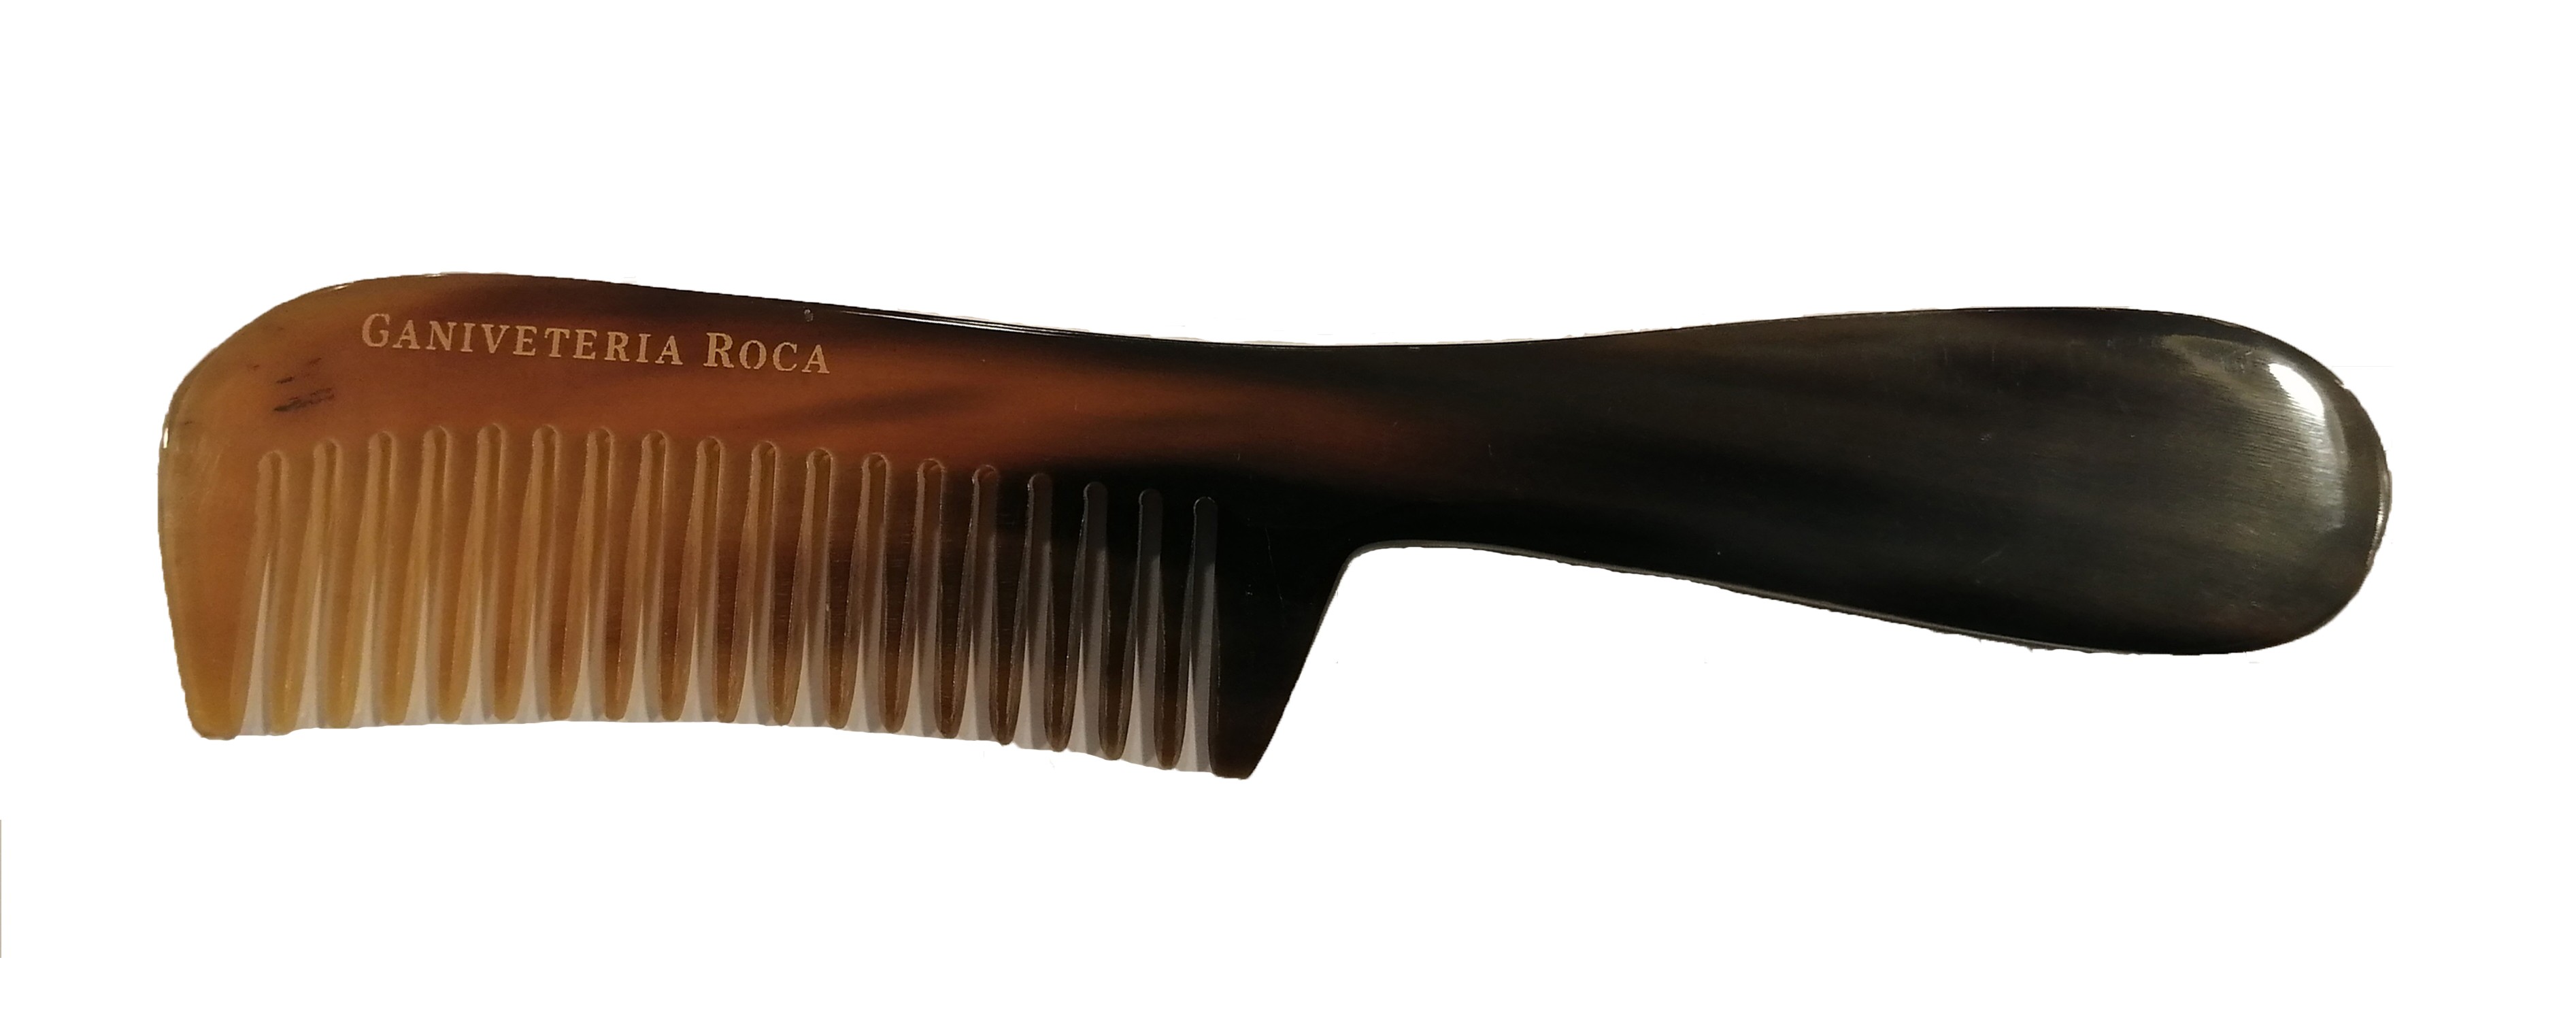 Cepillo para Barba o viaje cerda jabalí y mango de madera - Ganivetería Roca